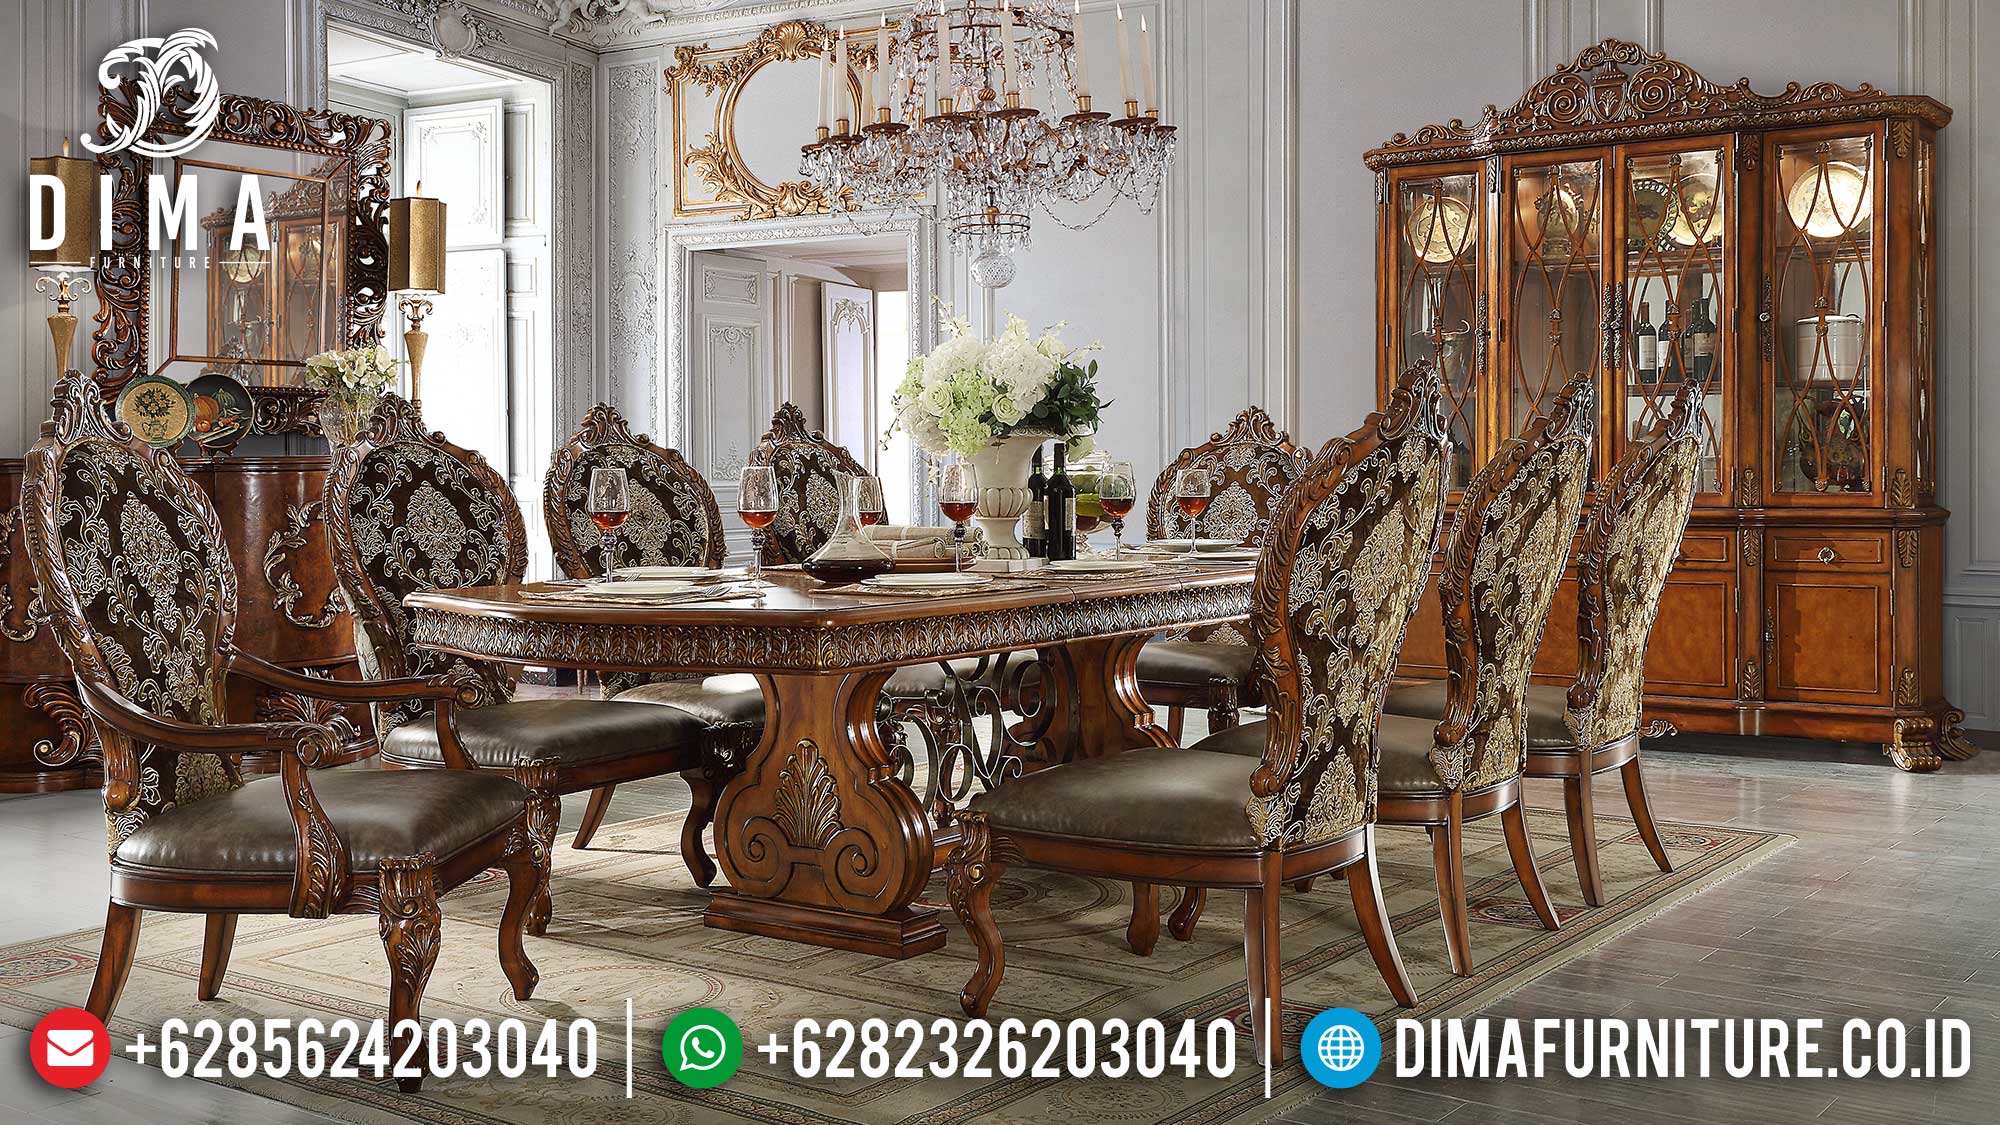 Harga Meja Makan Mewah Terbaru Classic Luxury Palace Imperial Design Mm-1001